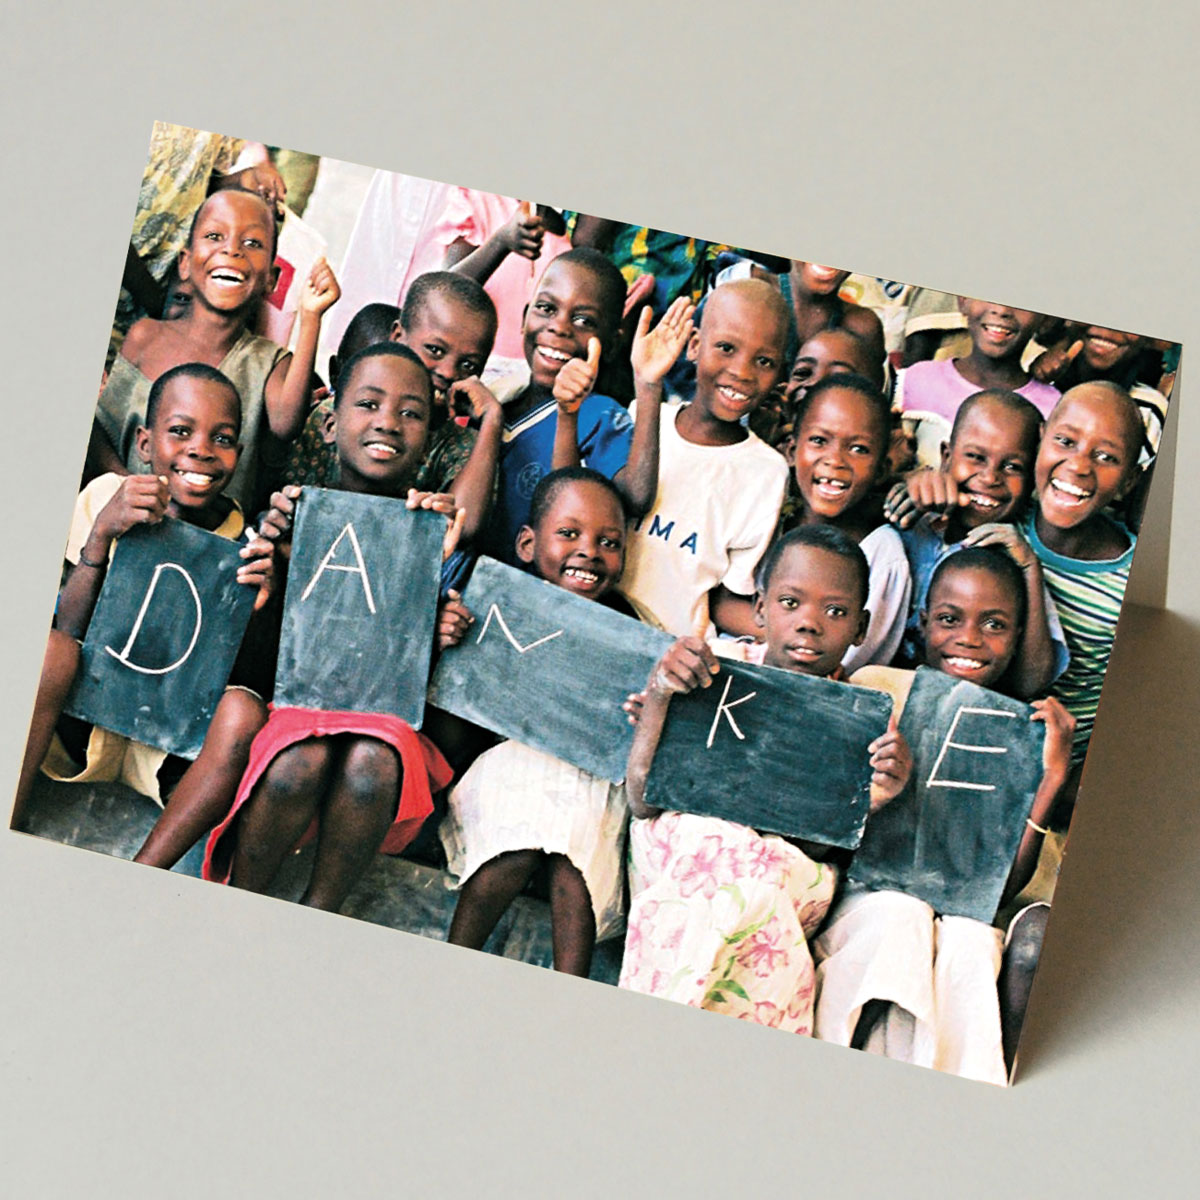 Kinder mit Danke auf einem Schild, Grußkarten der Kinderhilfsorganisation burundikids